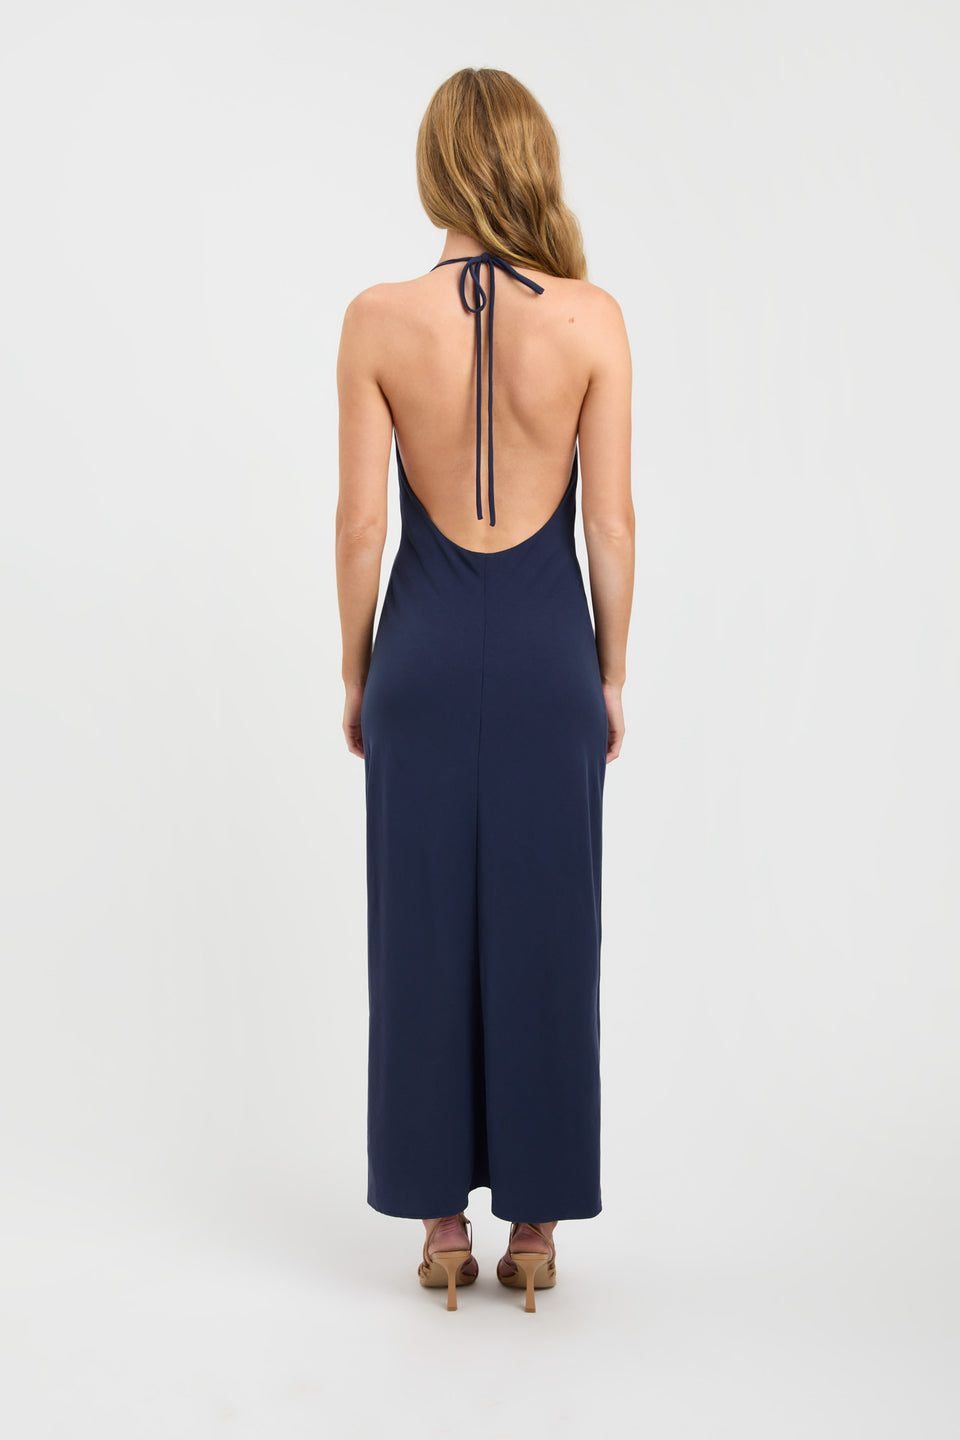 Buy Koko Halter Dress Ink Blue Online | Australia